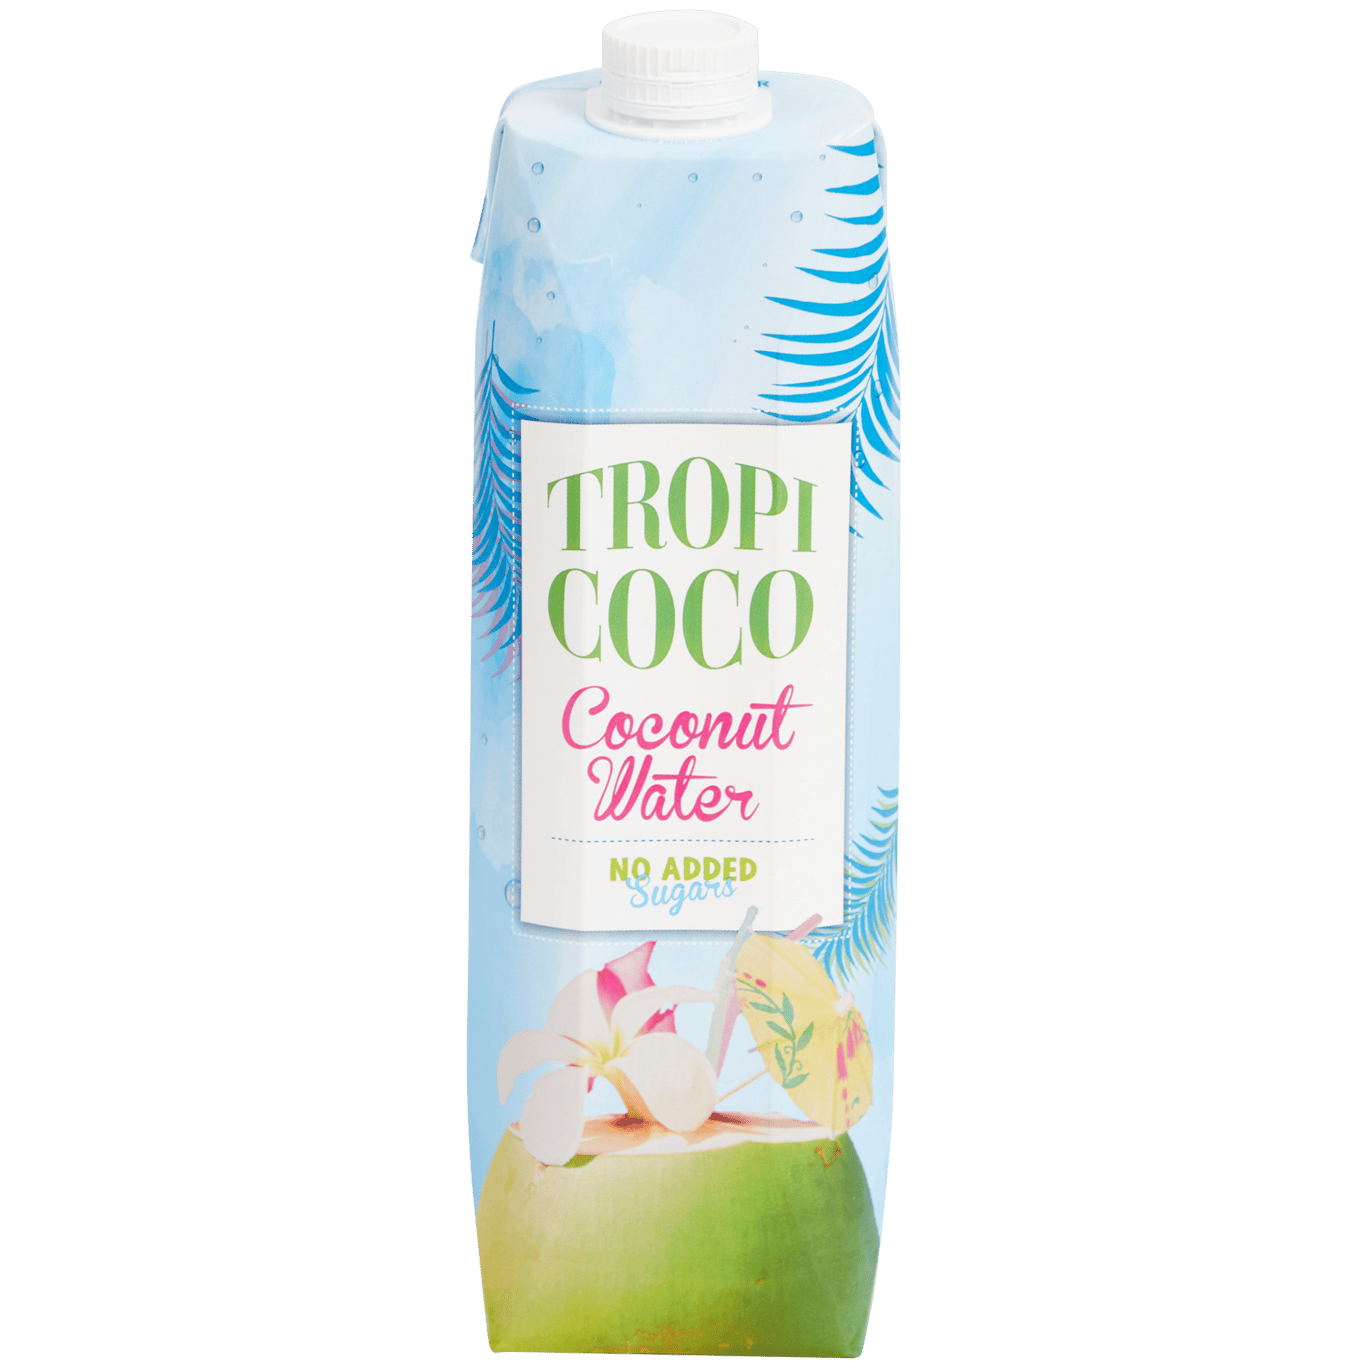 Acqua di cocco Tropi-coco